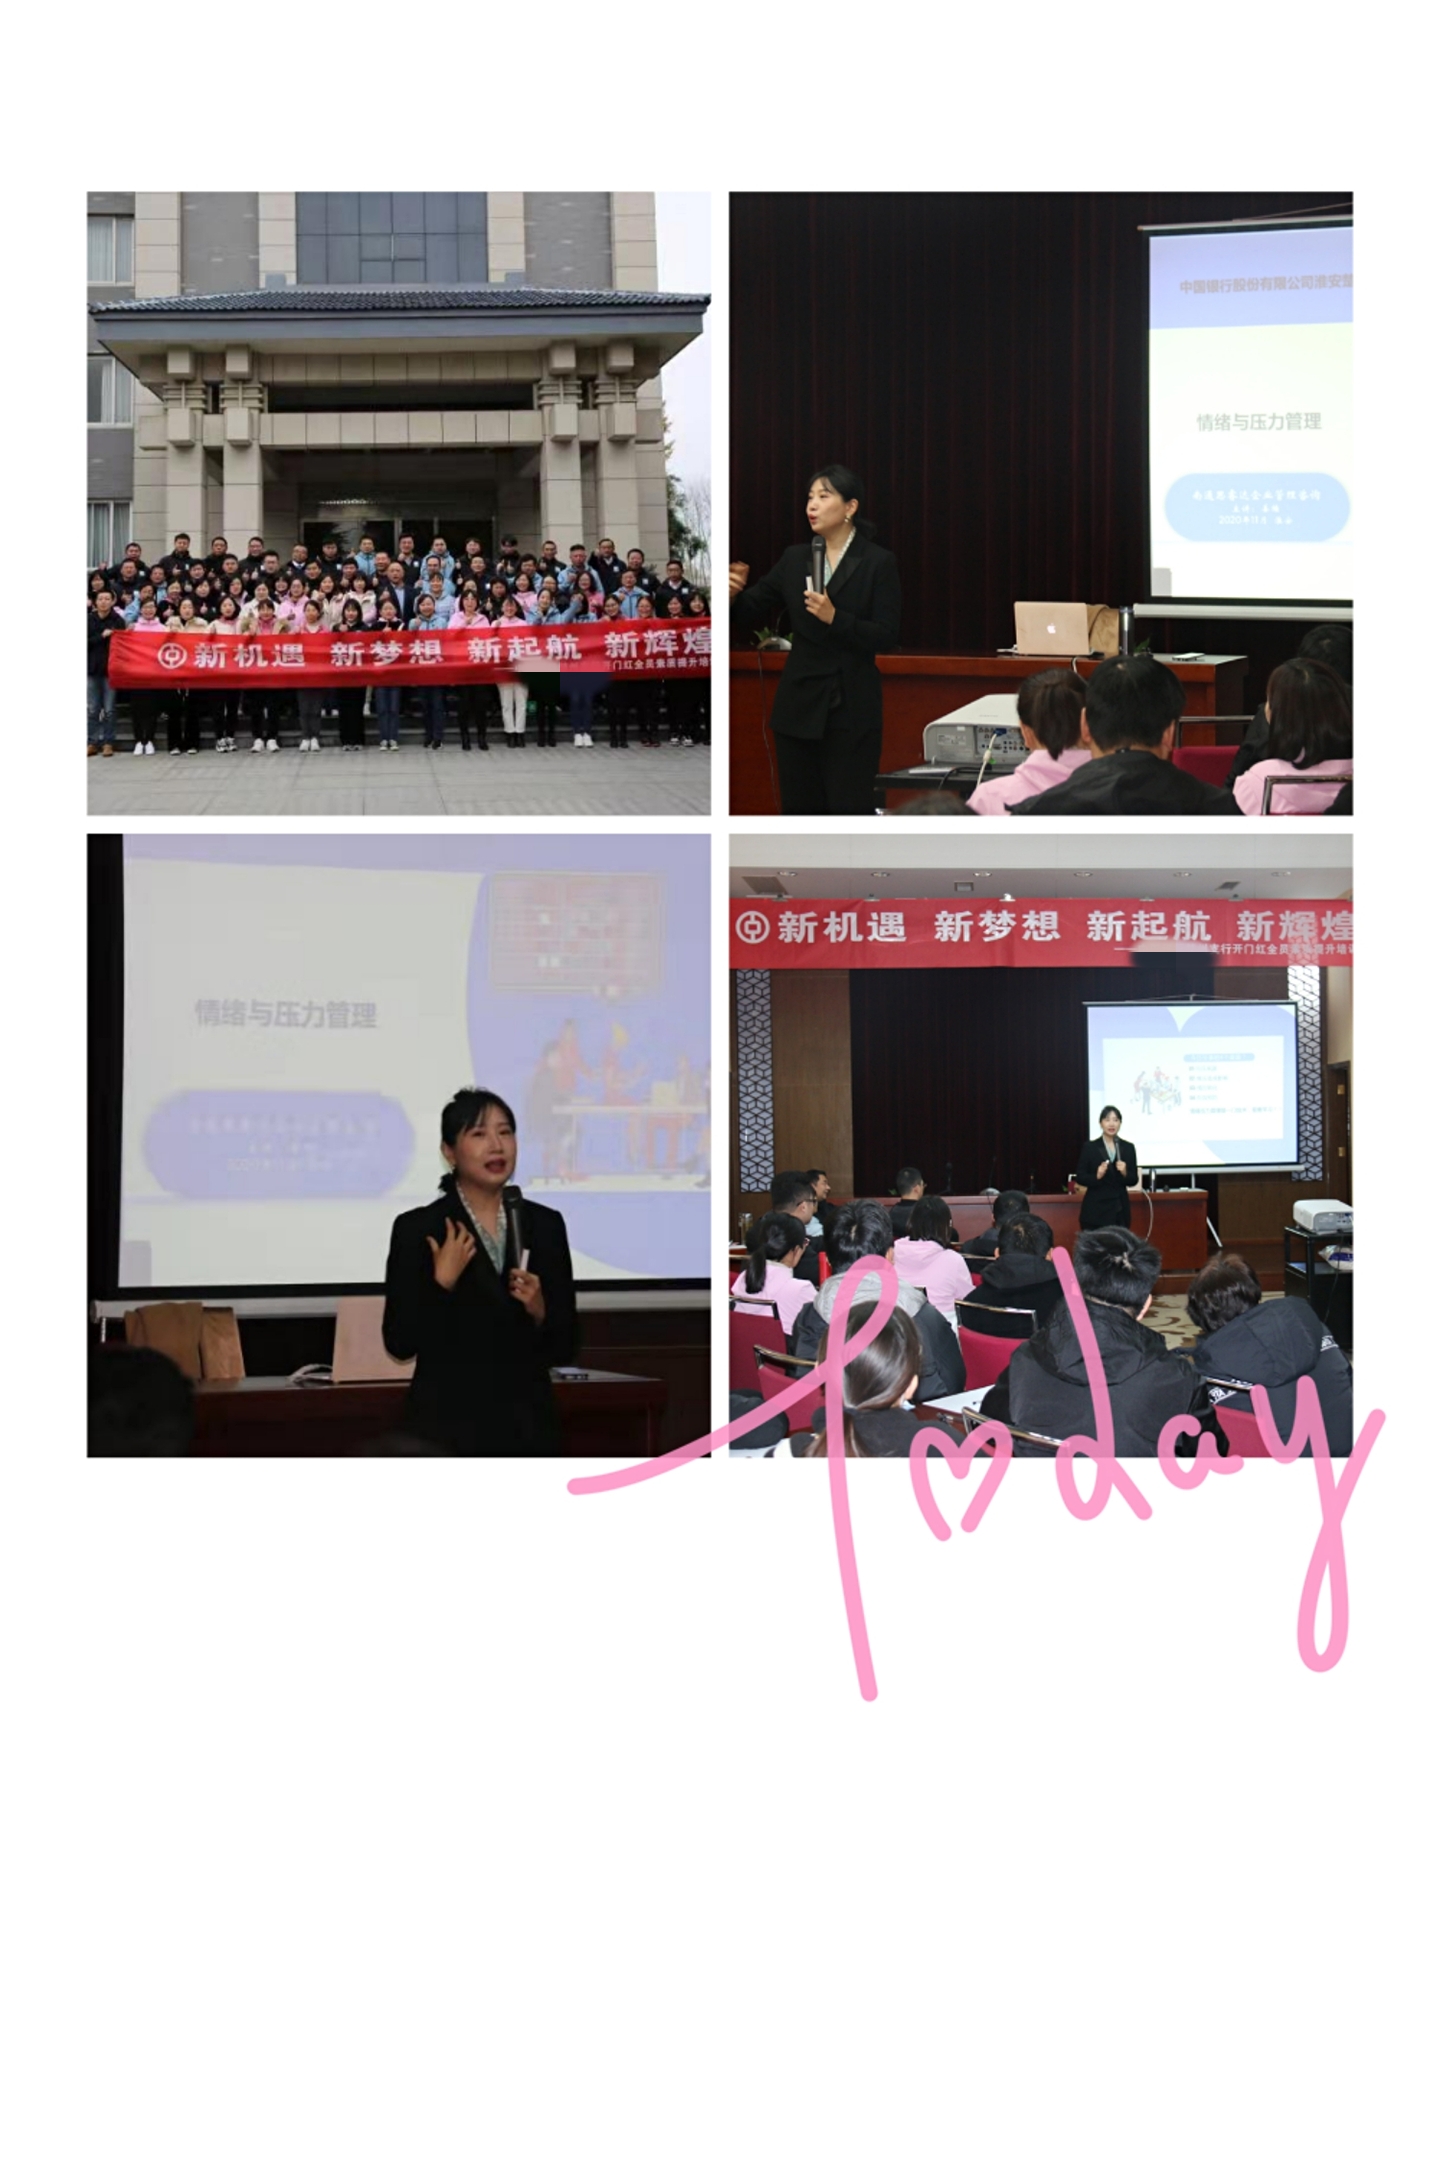 姜楠老师11月28日受邀淮安某银行讲授的《银行人的情绪与压力》课程圆满结束